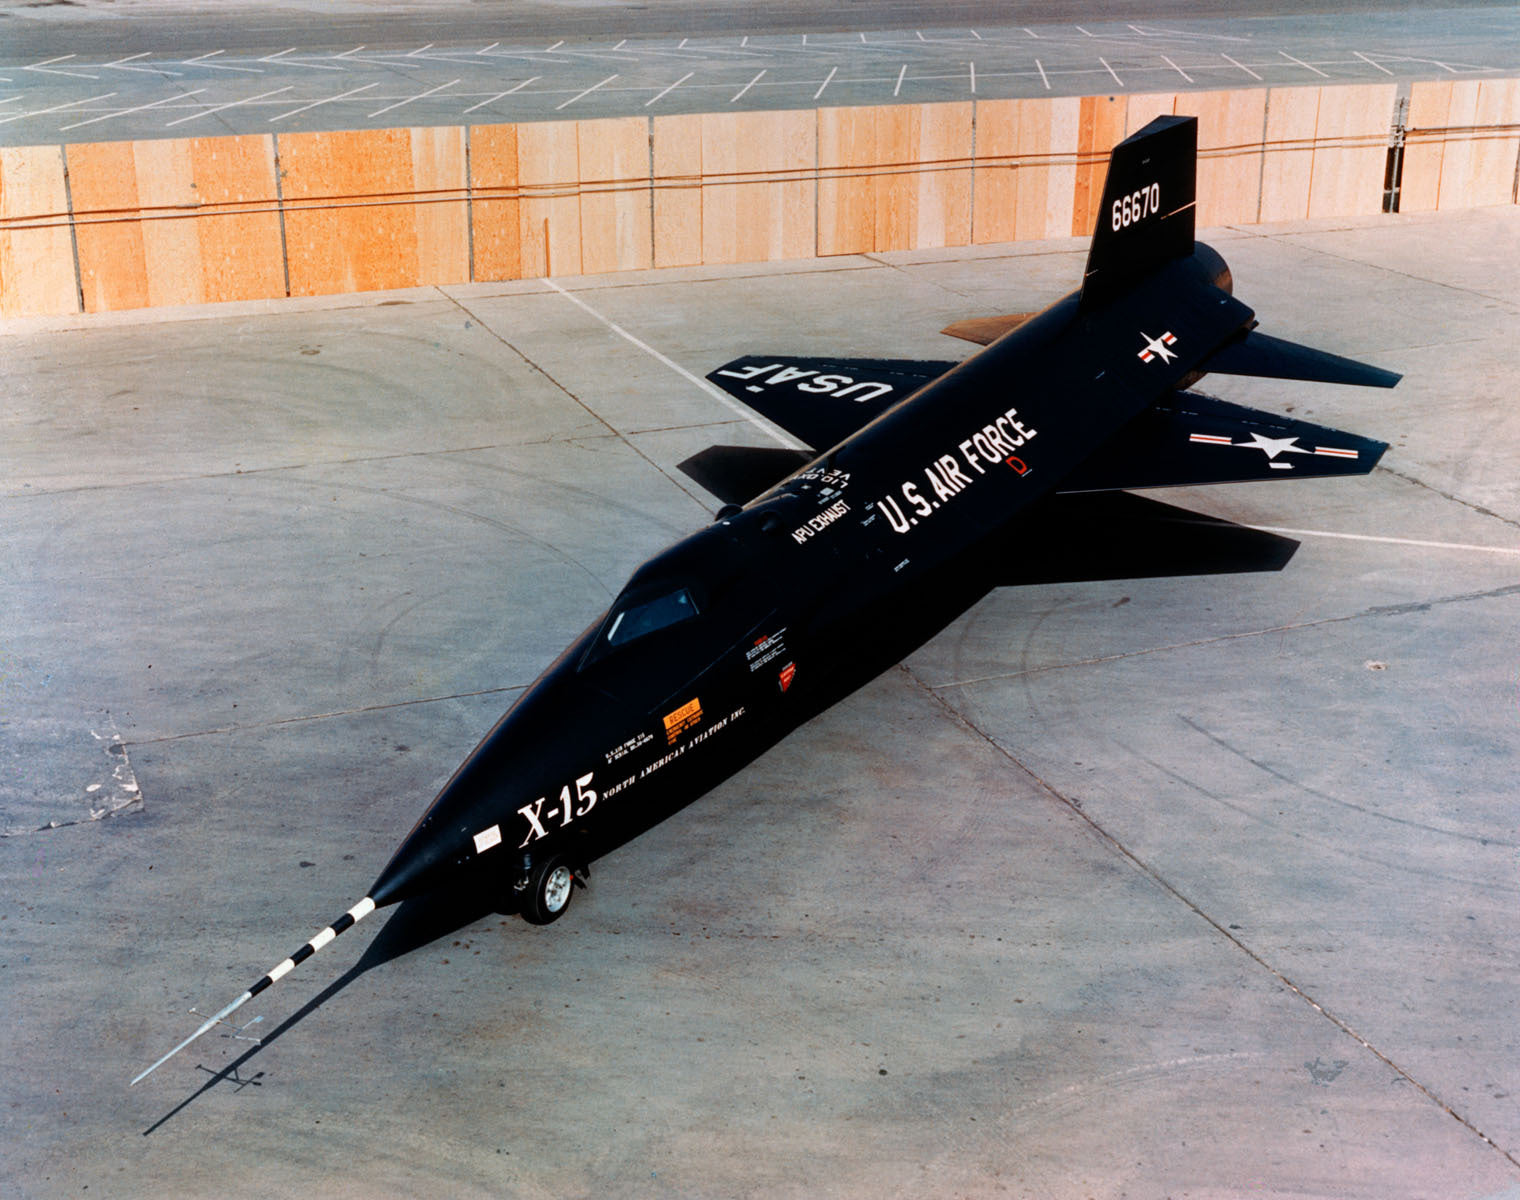 X-15 Rocket Research Plane on Tarmac BI219166